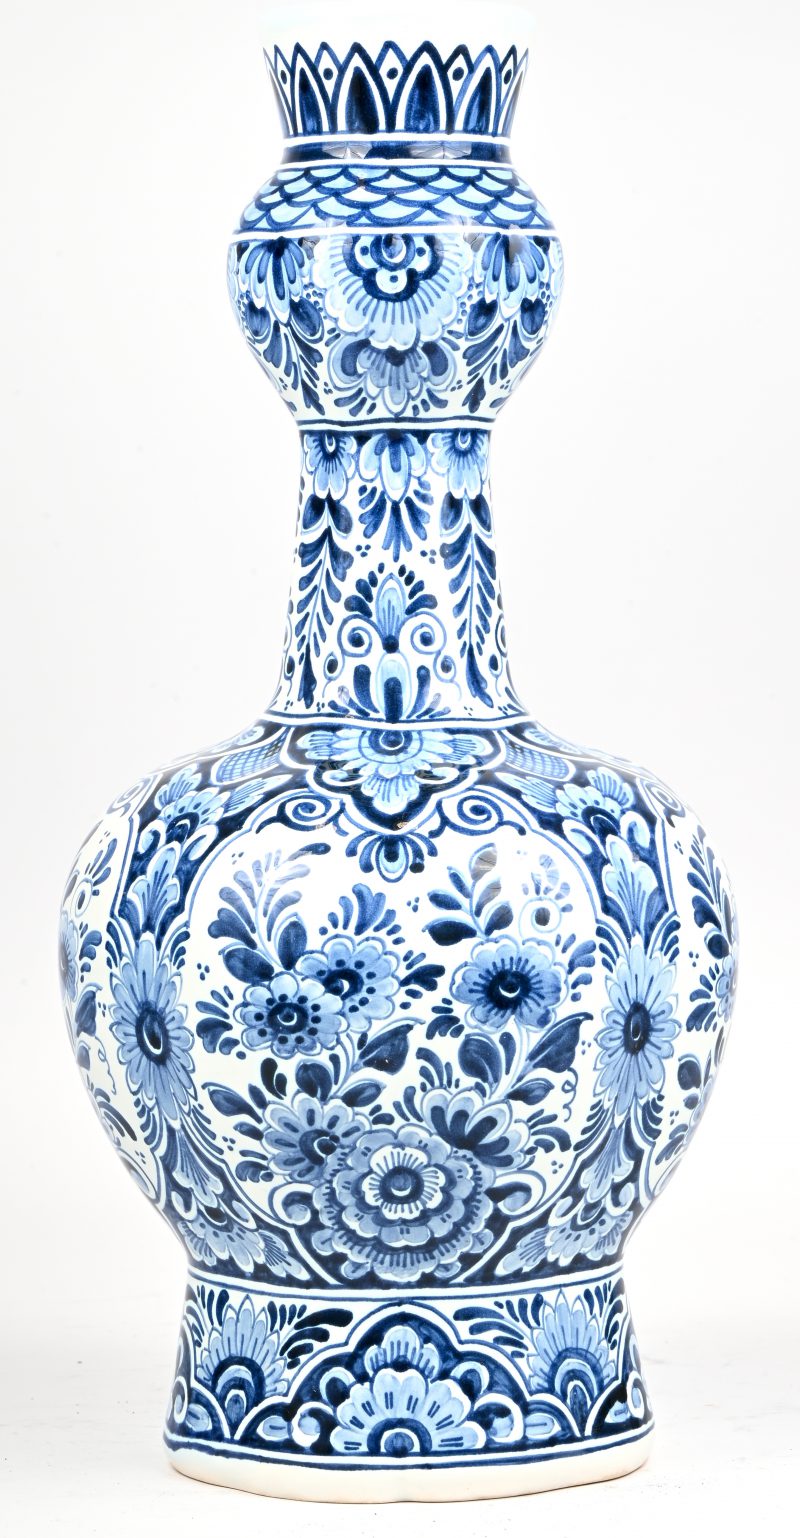 Een blauw-wit porseleinen knobbelvaas. Onderaan gemerkt De Porcelyne Fles.